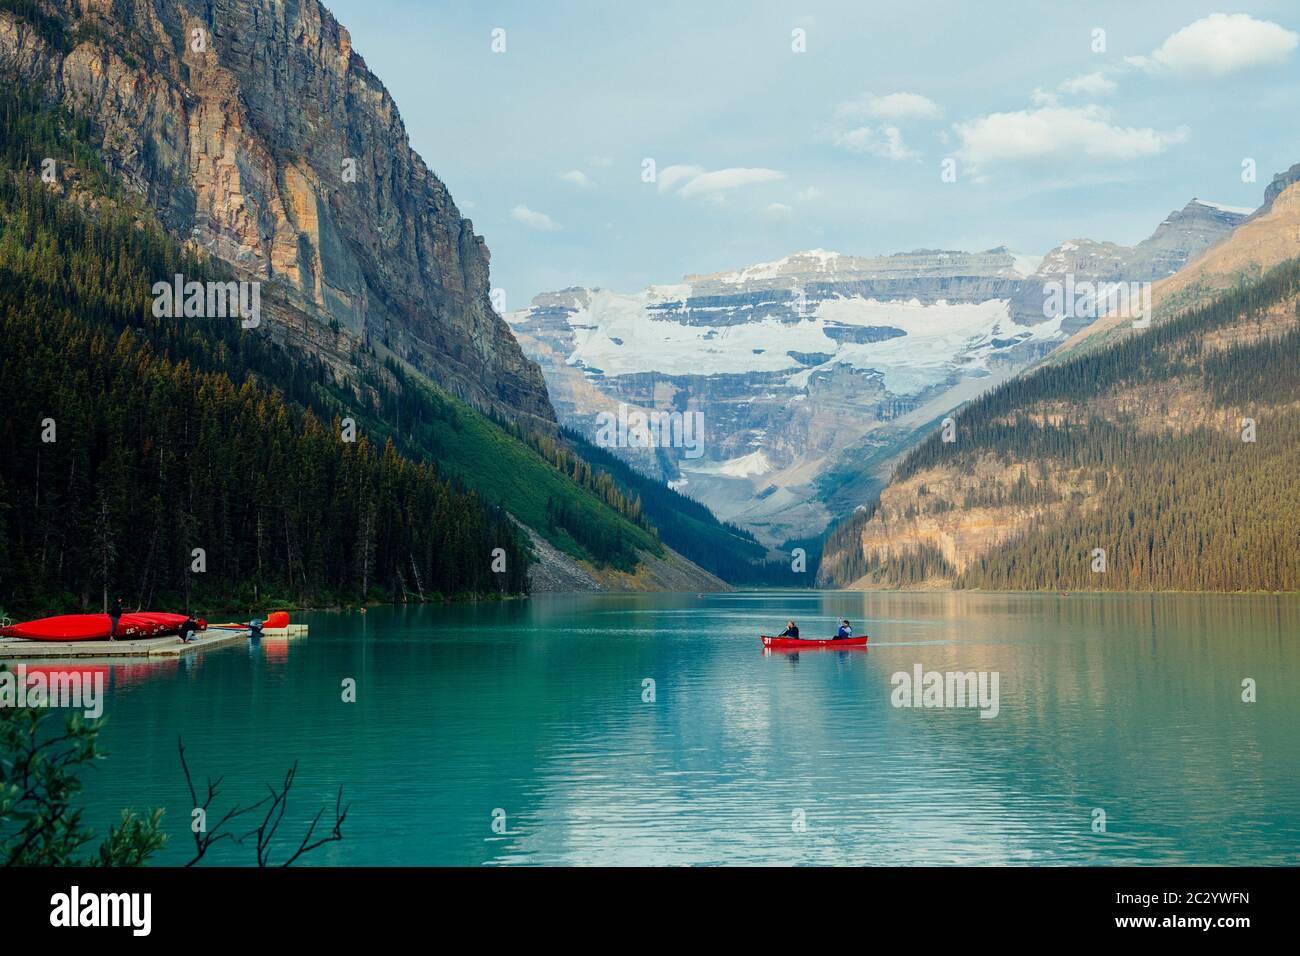 Vue latérale de la barque rouge sur le lac calme, Banff, Alberta, Canada Banque D'Images